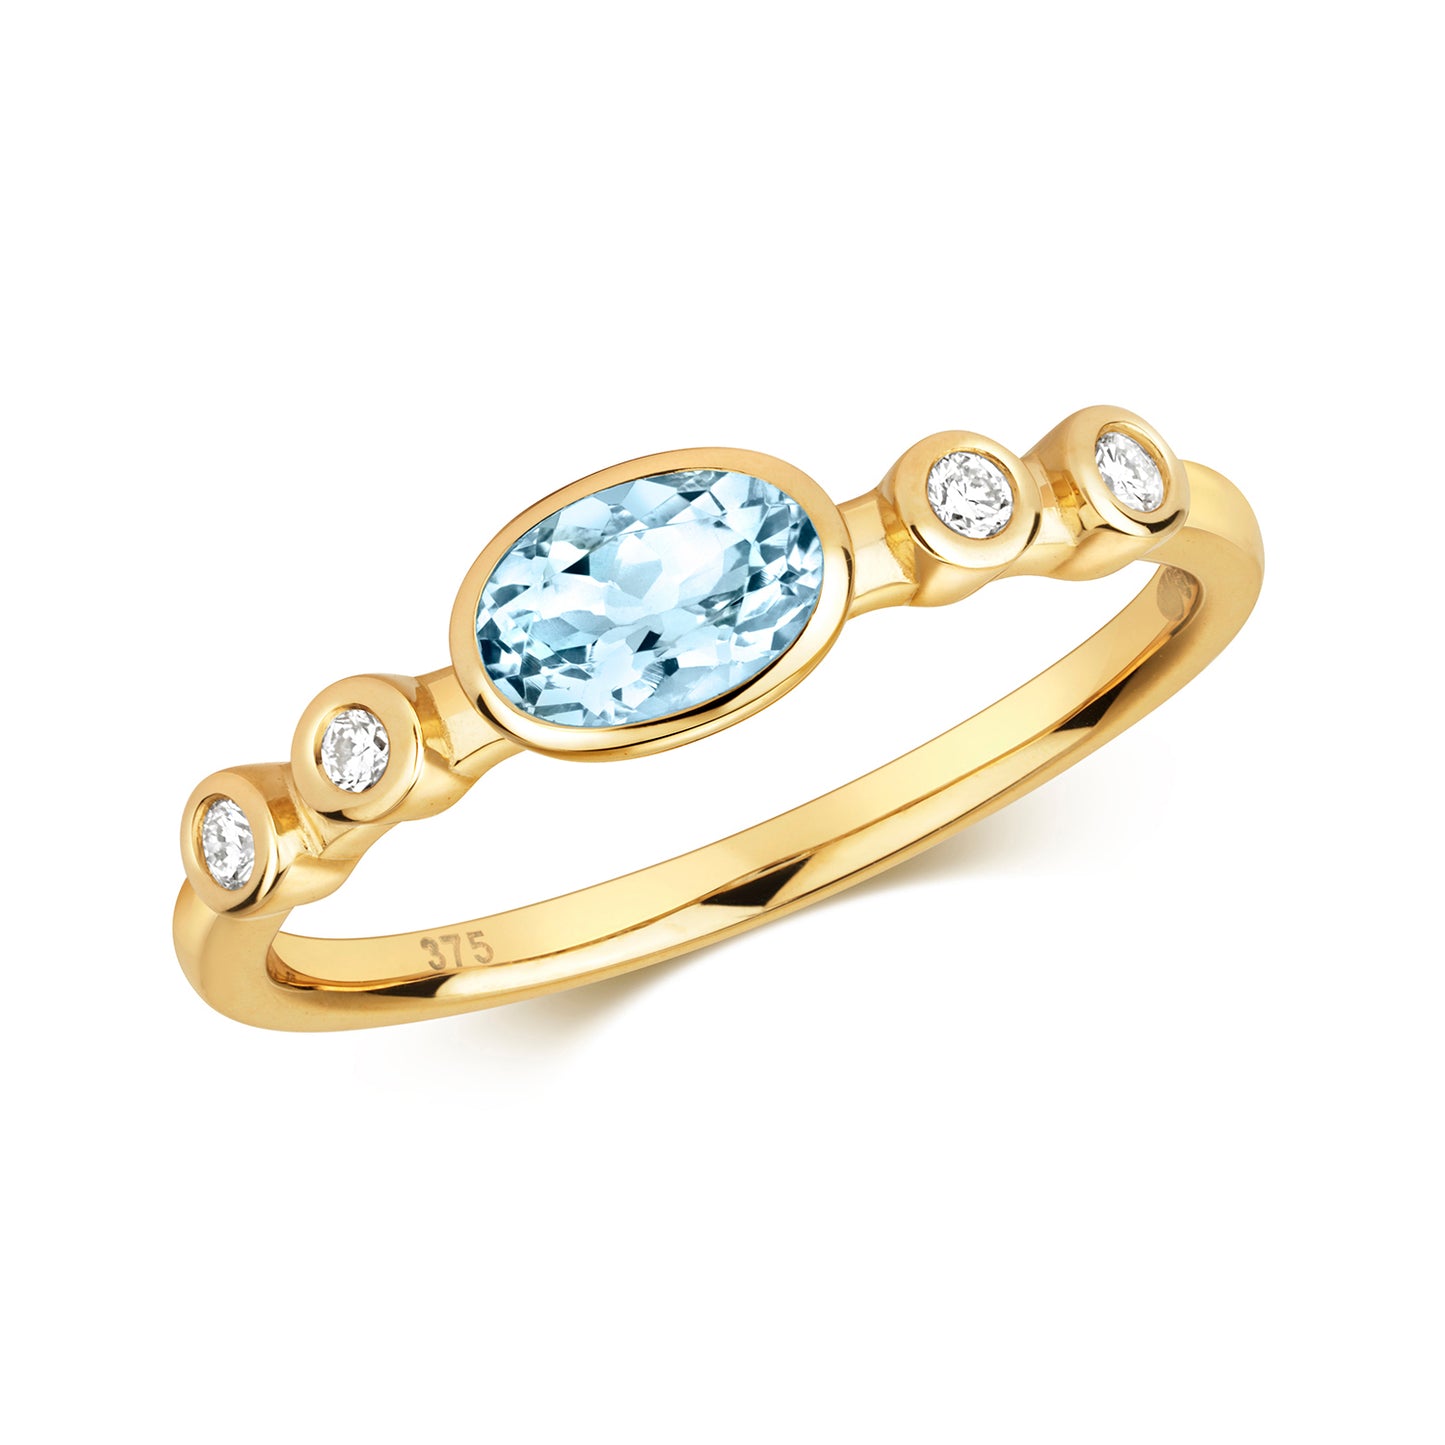 9ct Yellow Gold Aquamarine and Diamond Ring, Ring Sizes J to Q (495)